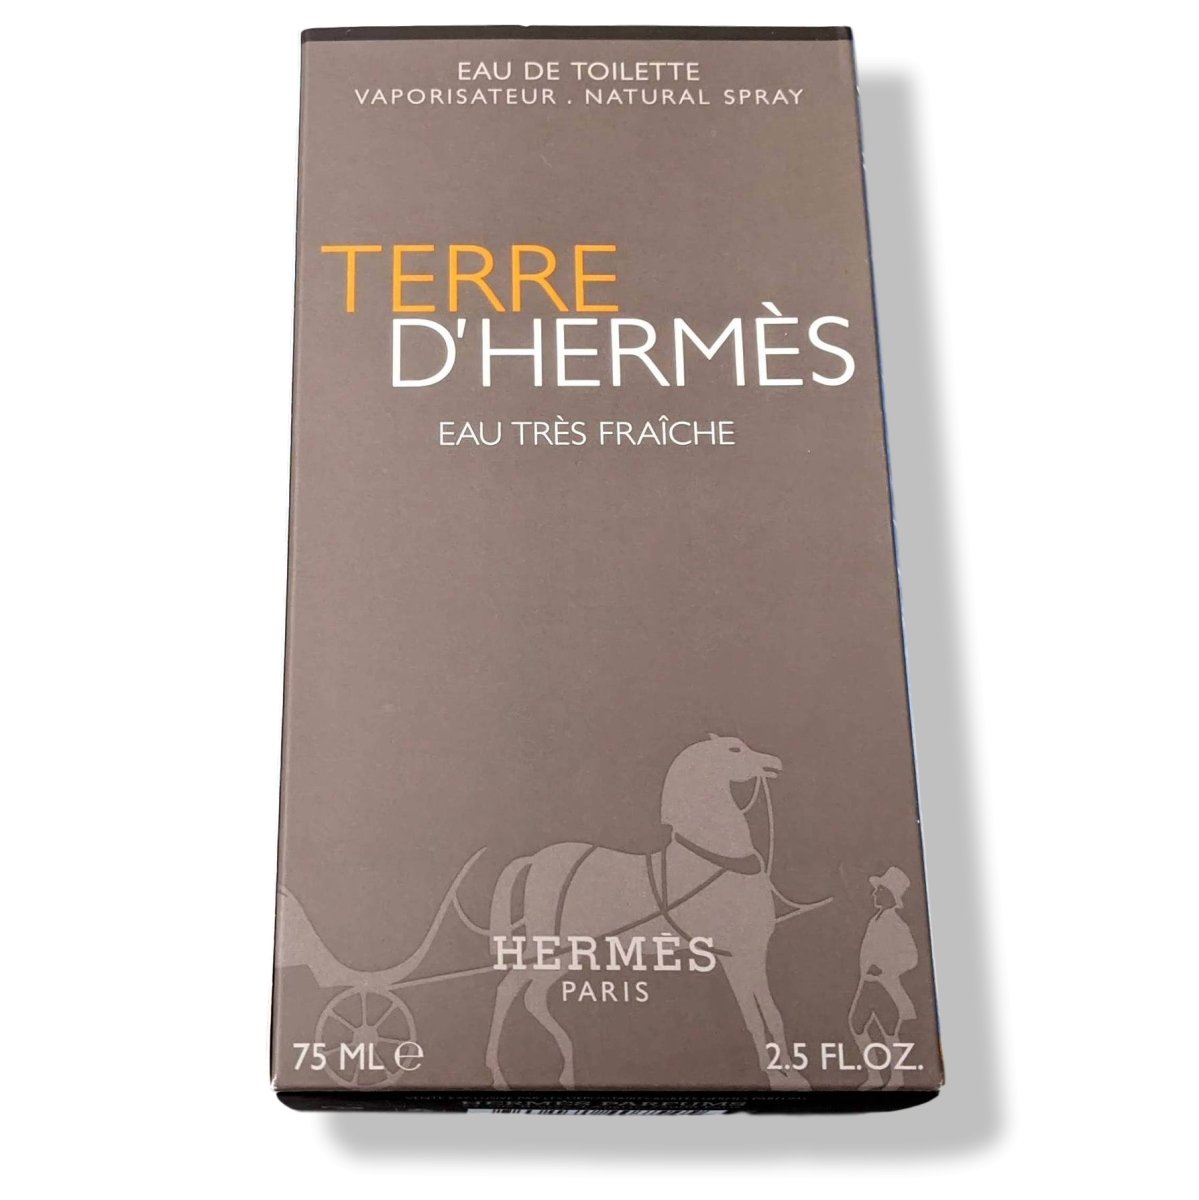 Hermes The Men's Universe TERRE D'HERMES Eau de Toilette Natural Spray 75ml  BNIB!